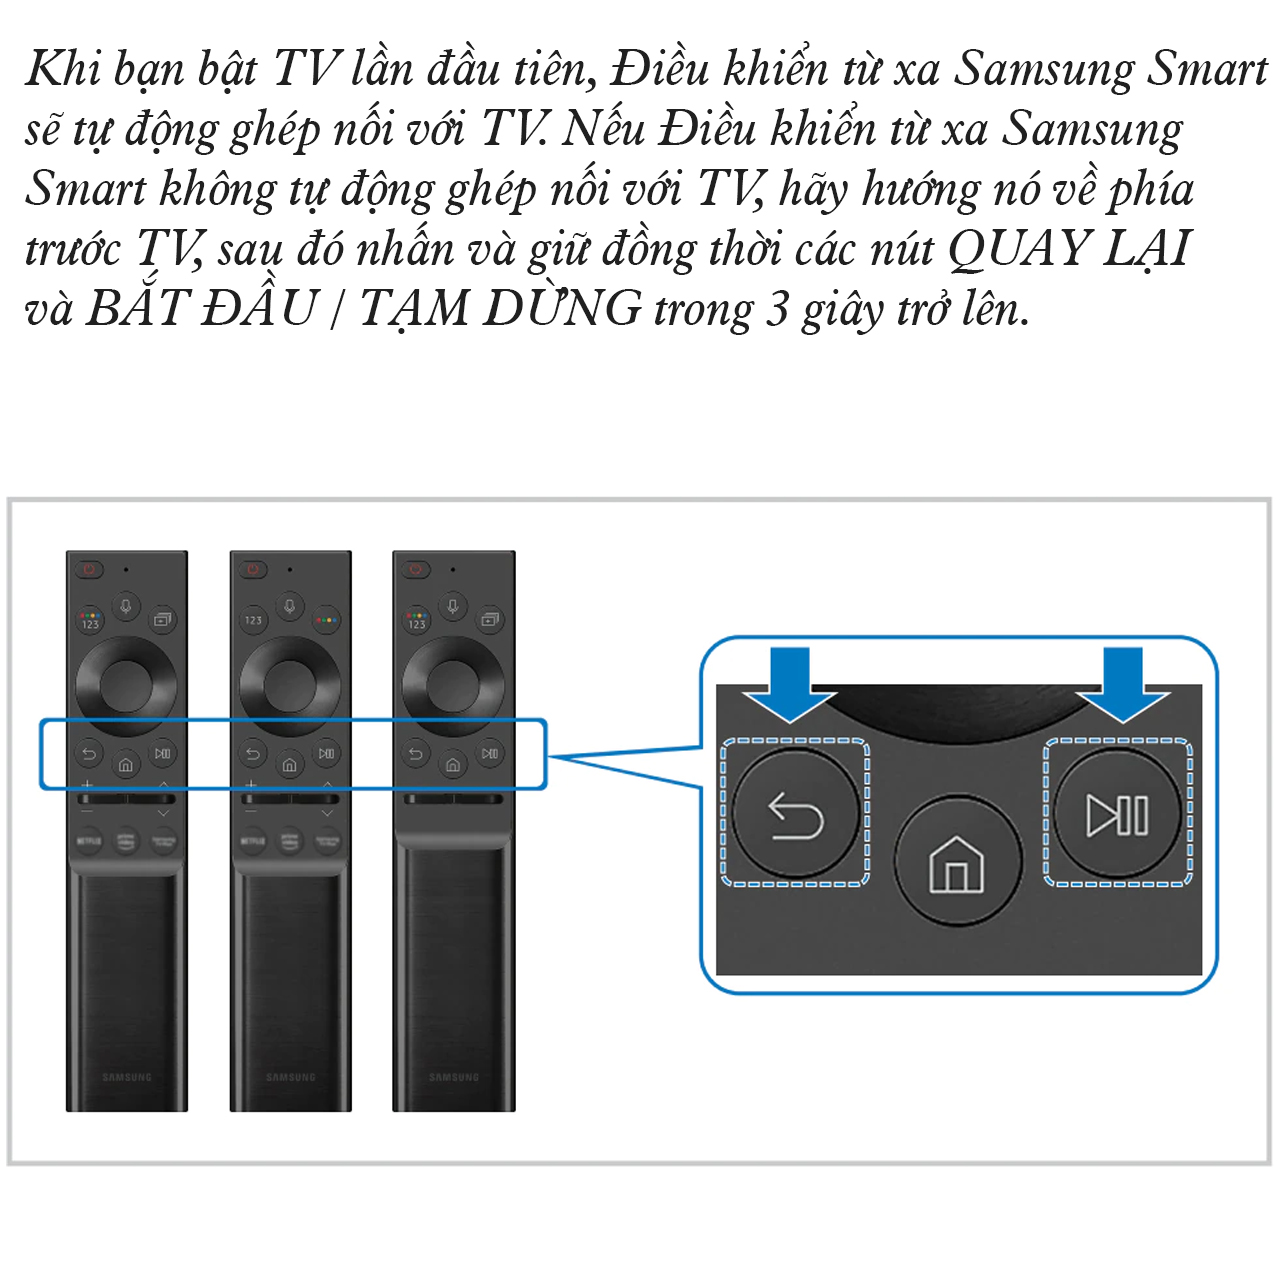 Điều khiển tivi Vineteam dành cho SAMSUNG Smart Tivi 4K, QLED loại cong, remote điều khiển bằng giọng nói - hàng nhập khẩu